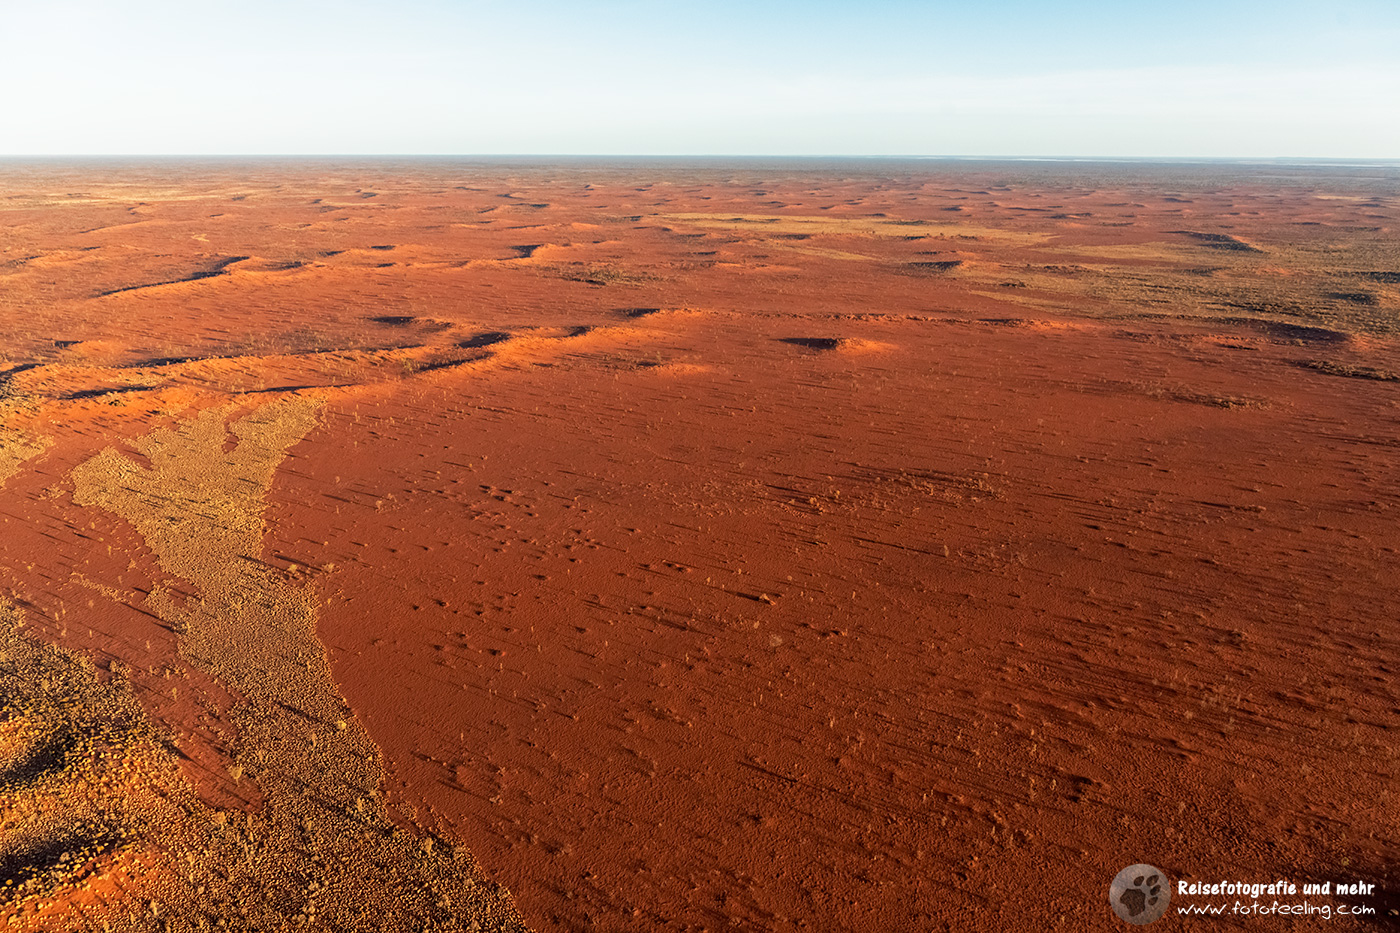 Hubschrauberflug über den Uluru-Kata Tjuta National Park, Northern Territory, Australien